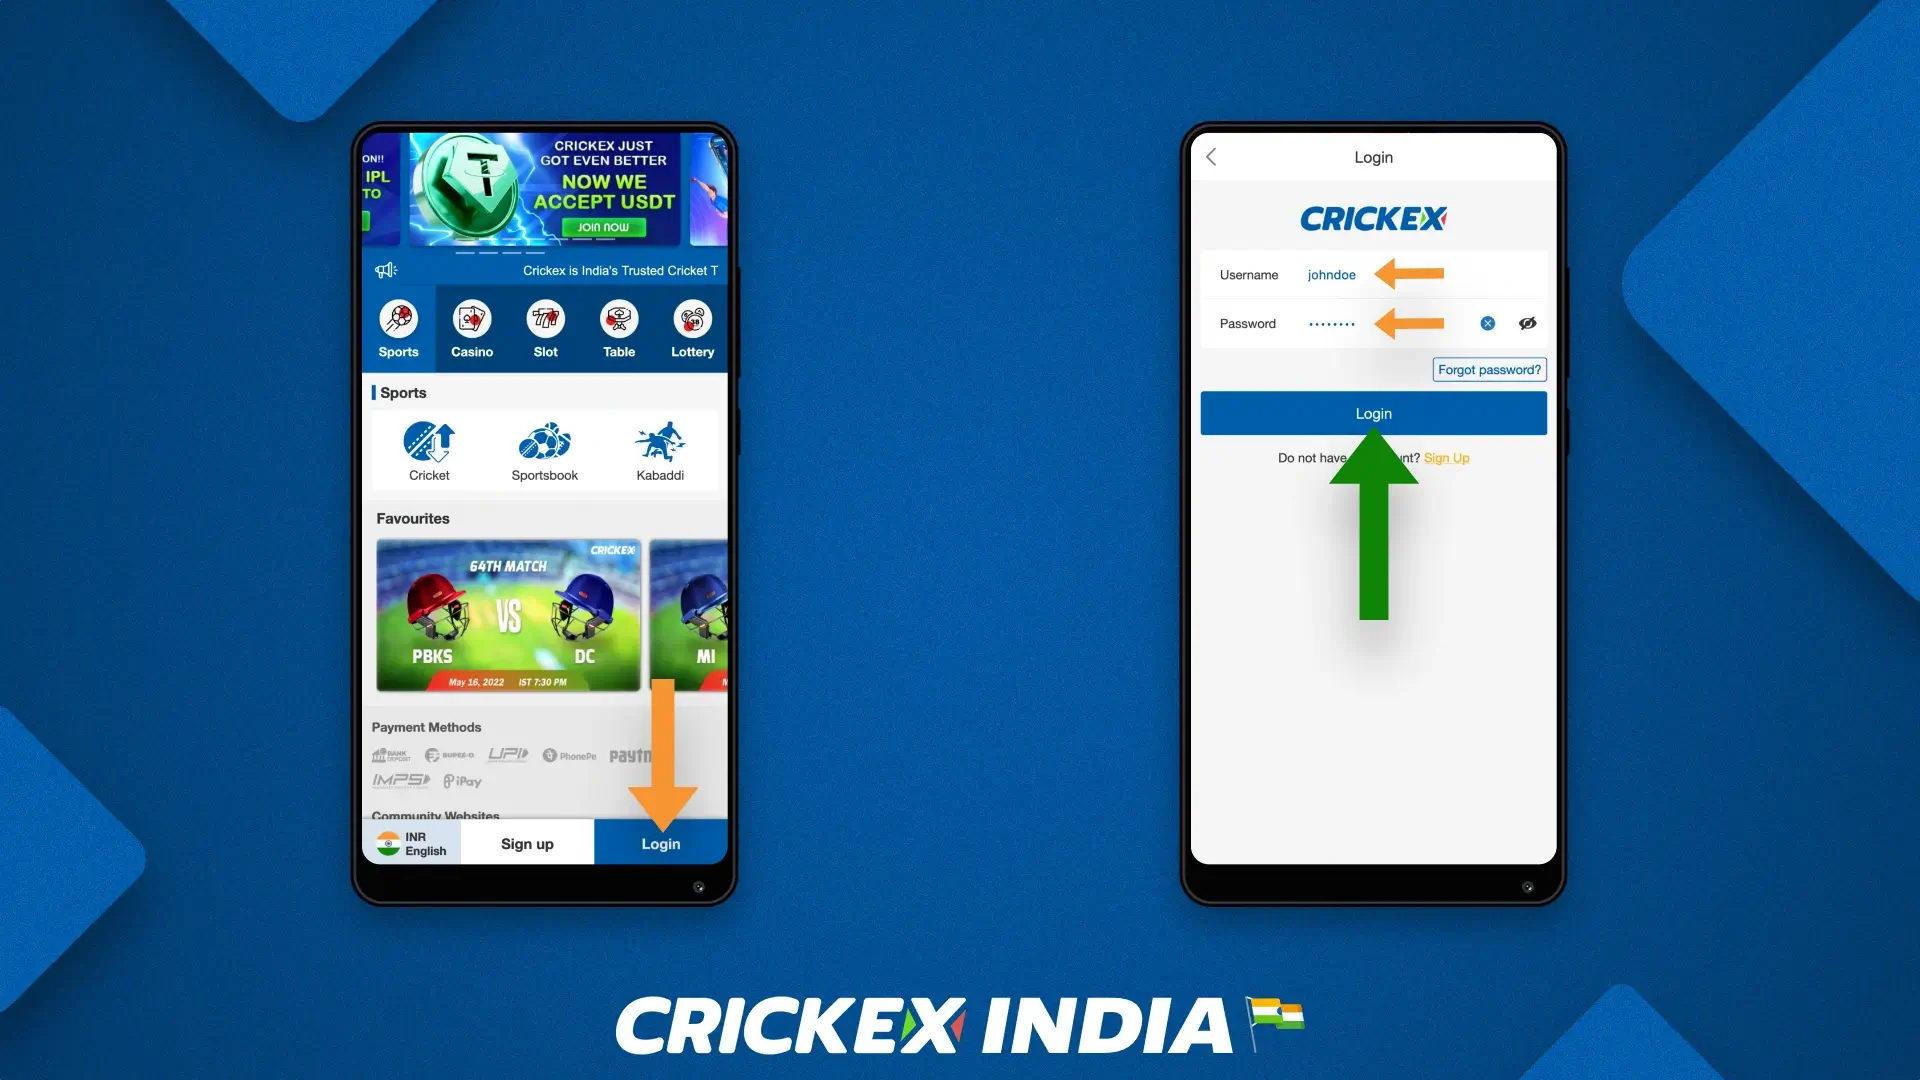 मोबाइल ऐप के माध्यम से अपने Crickex खाते में कैसे लॉग इन करें